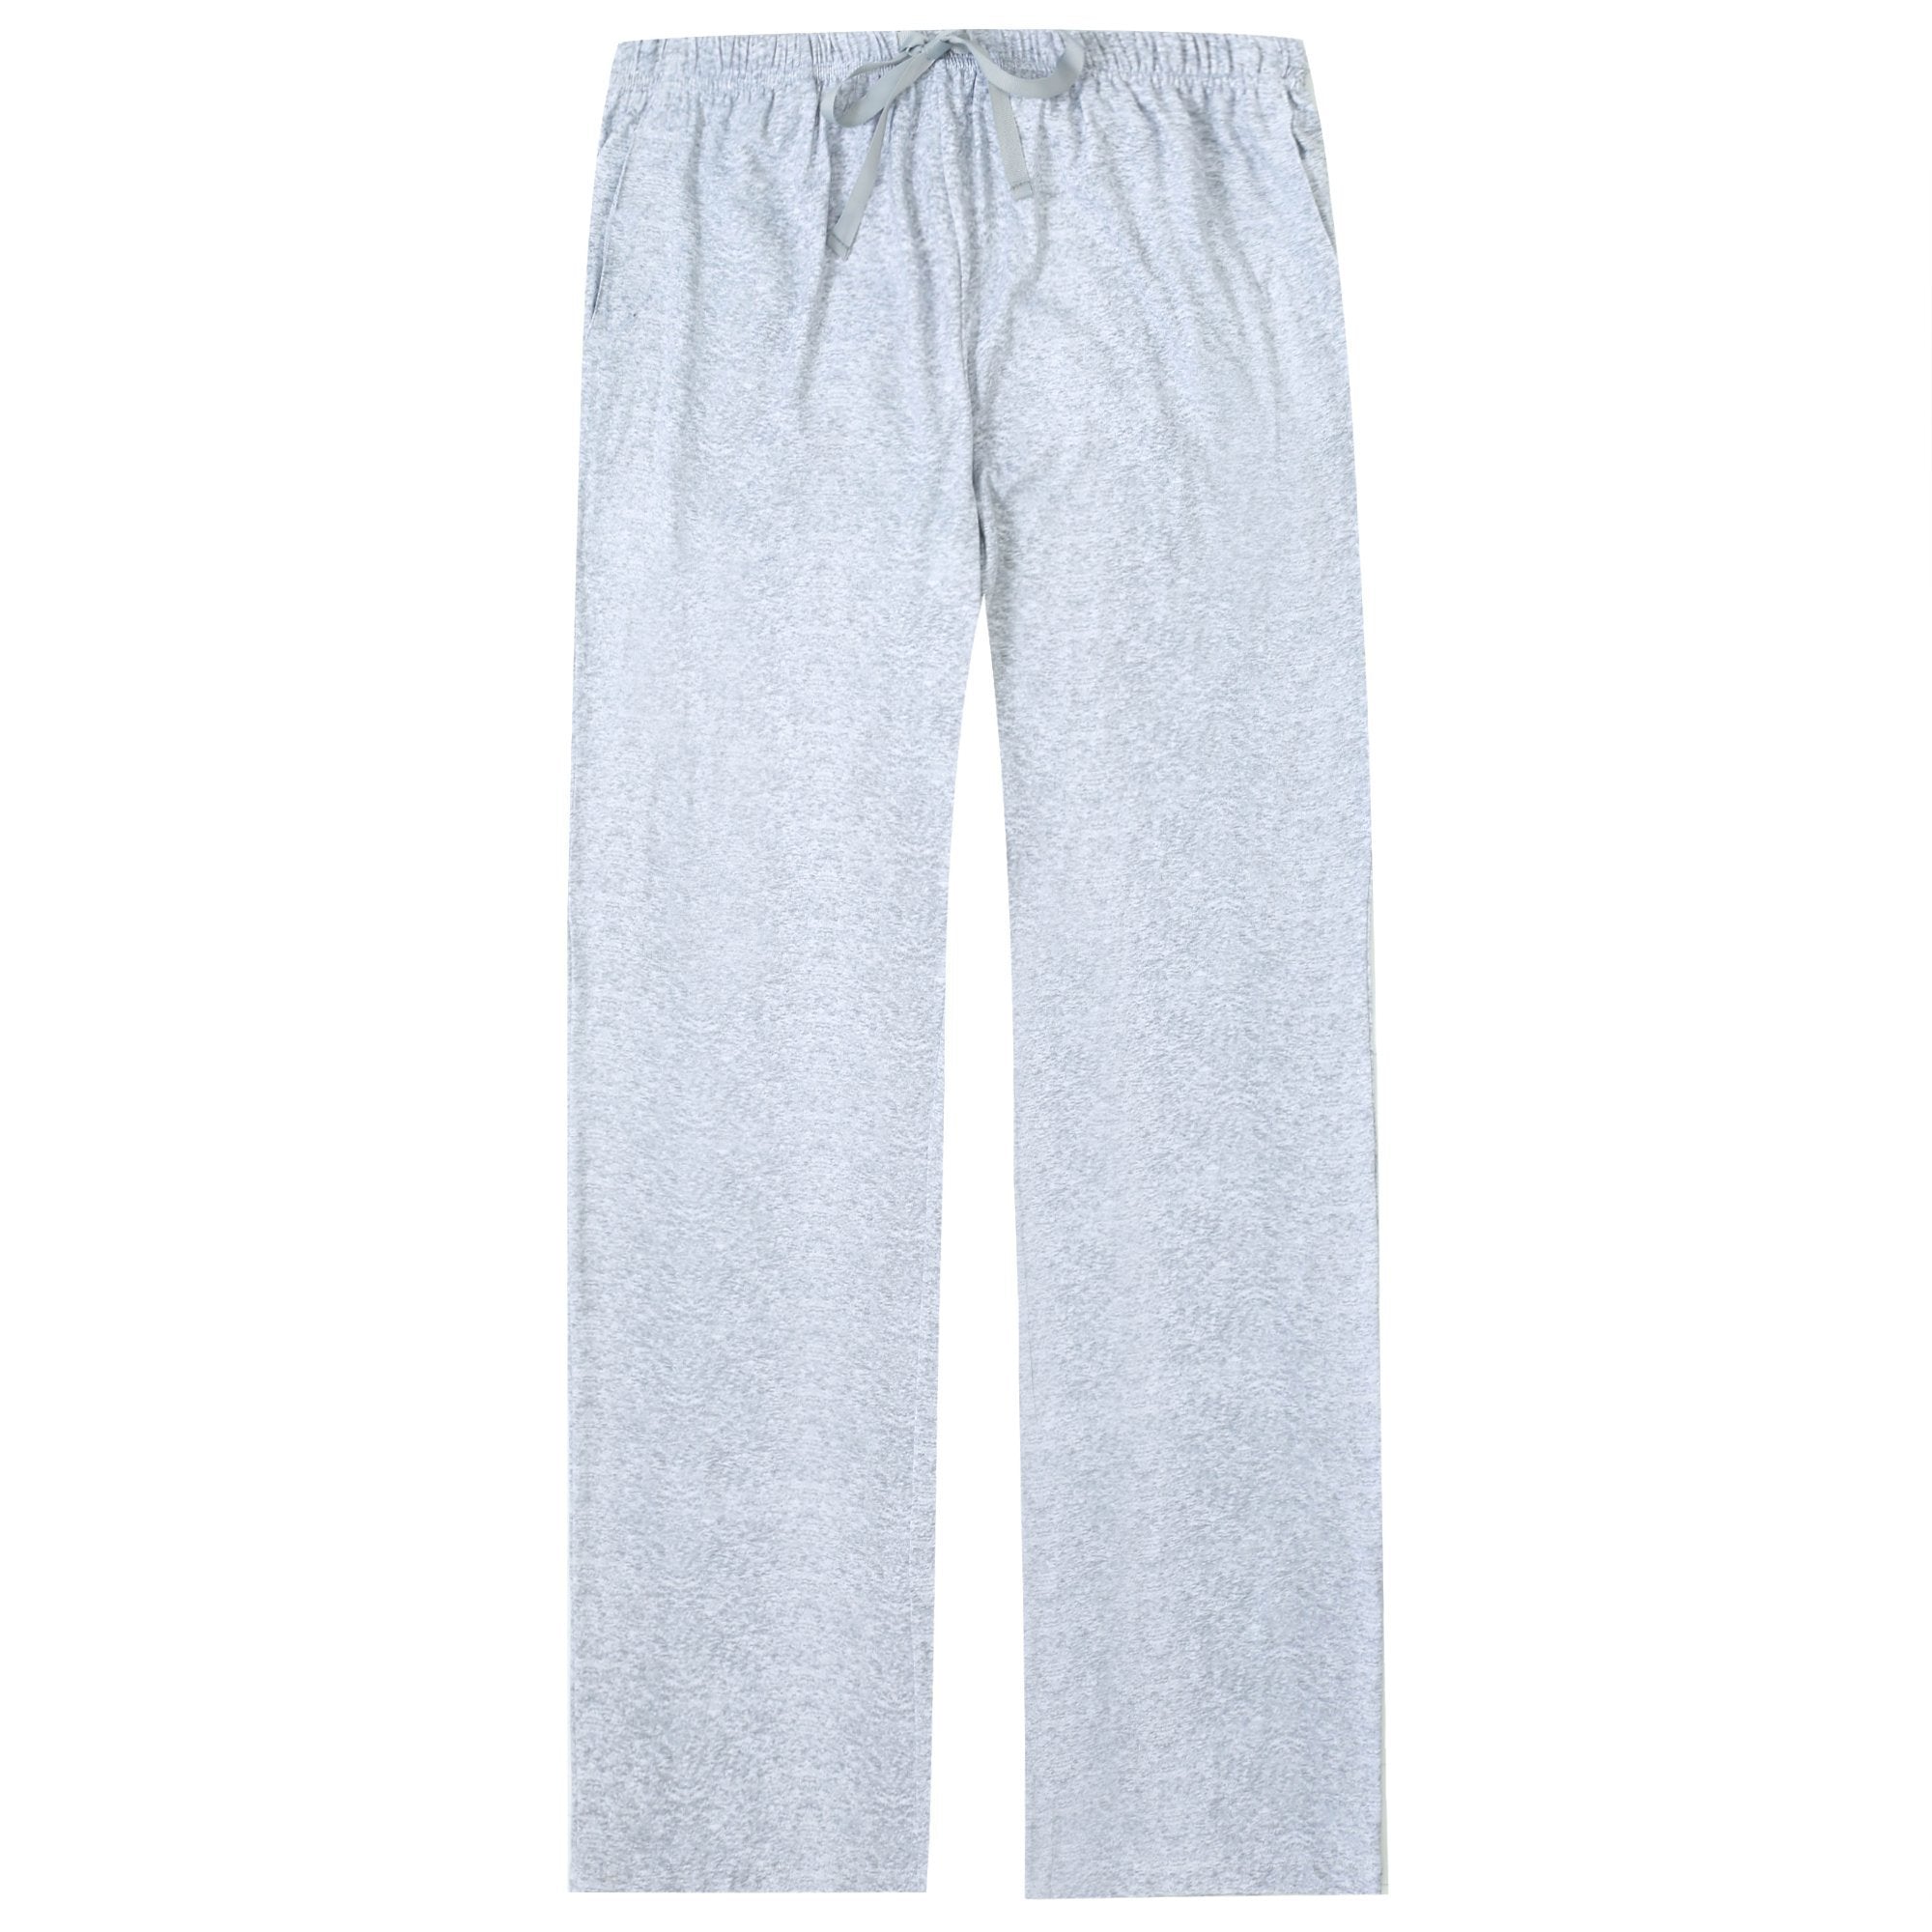 iThinksew - Patterns and More - Bertha Women's Pajama Pants PDF Pattern